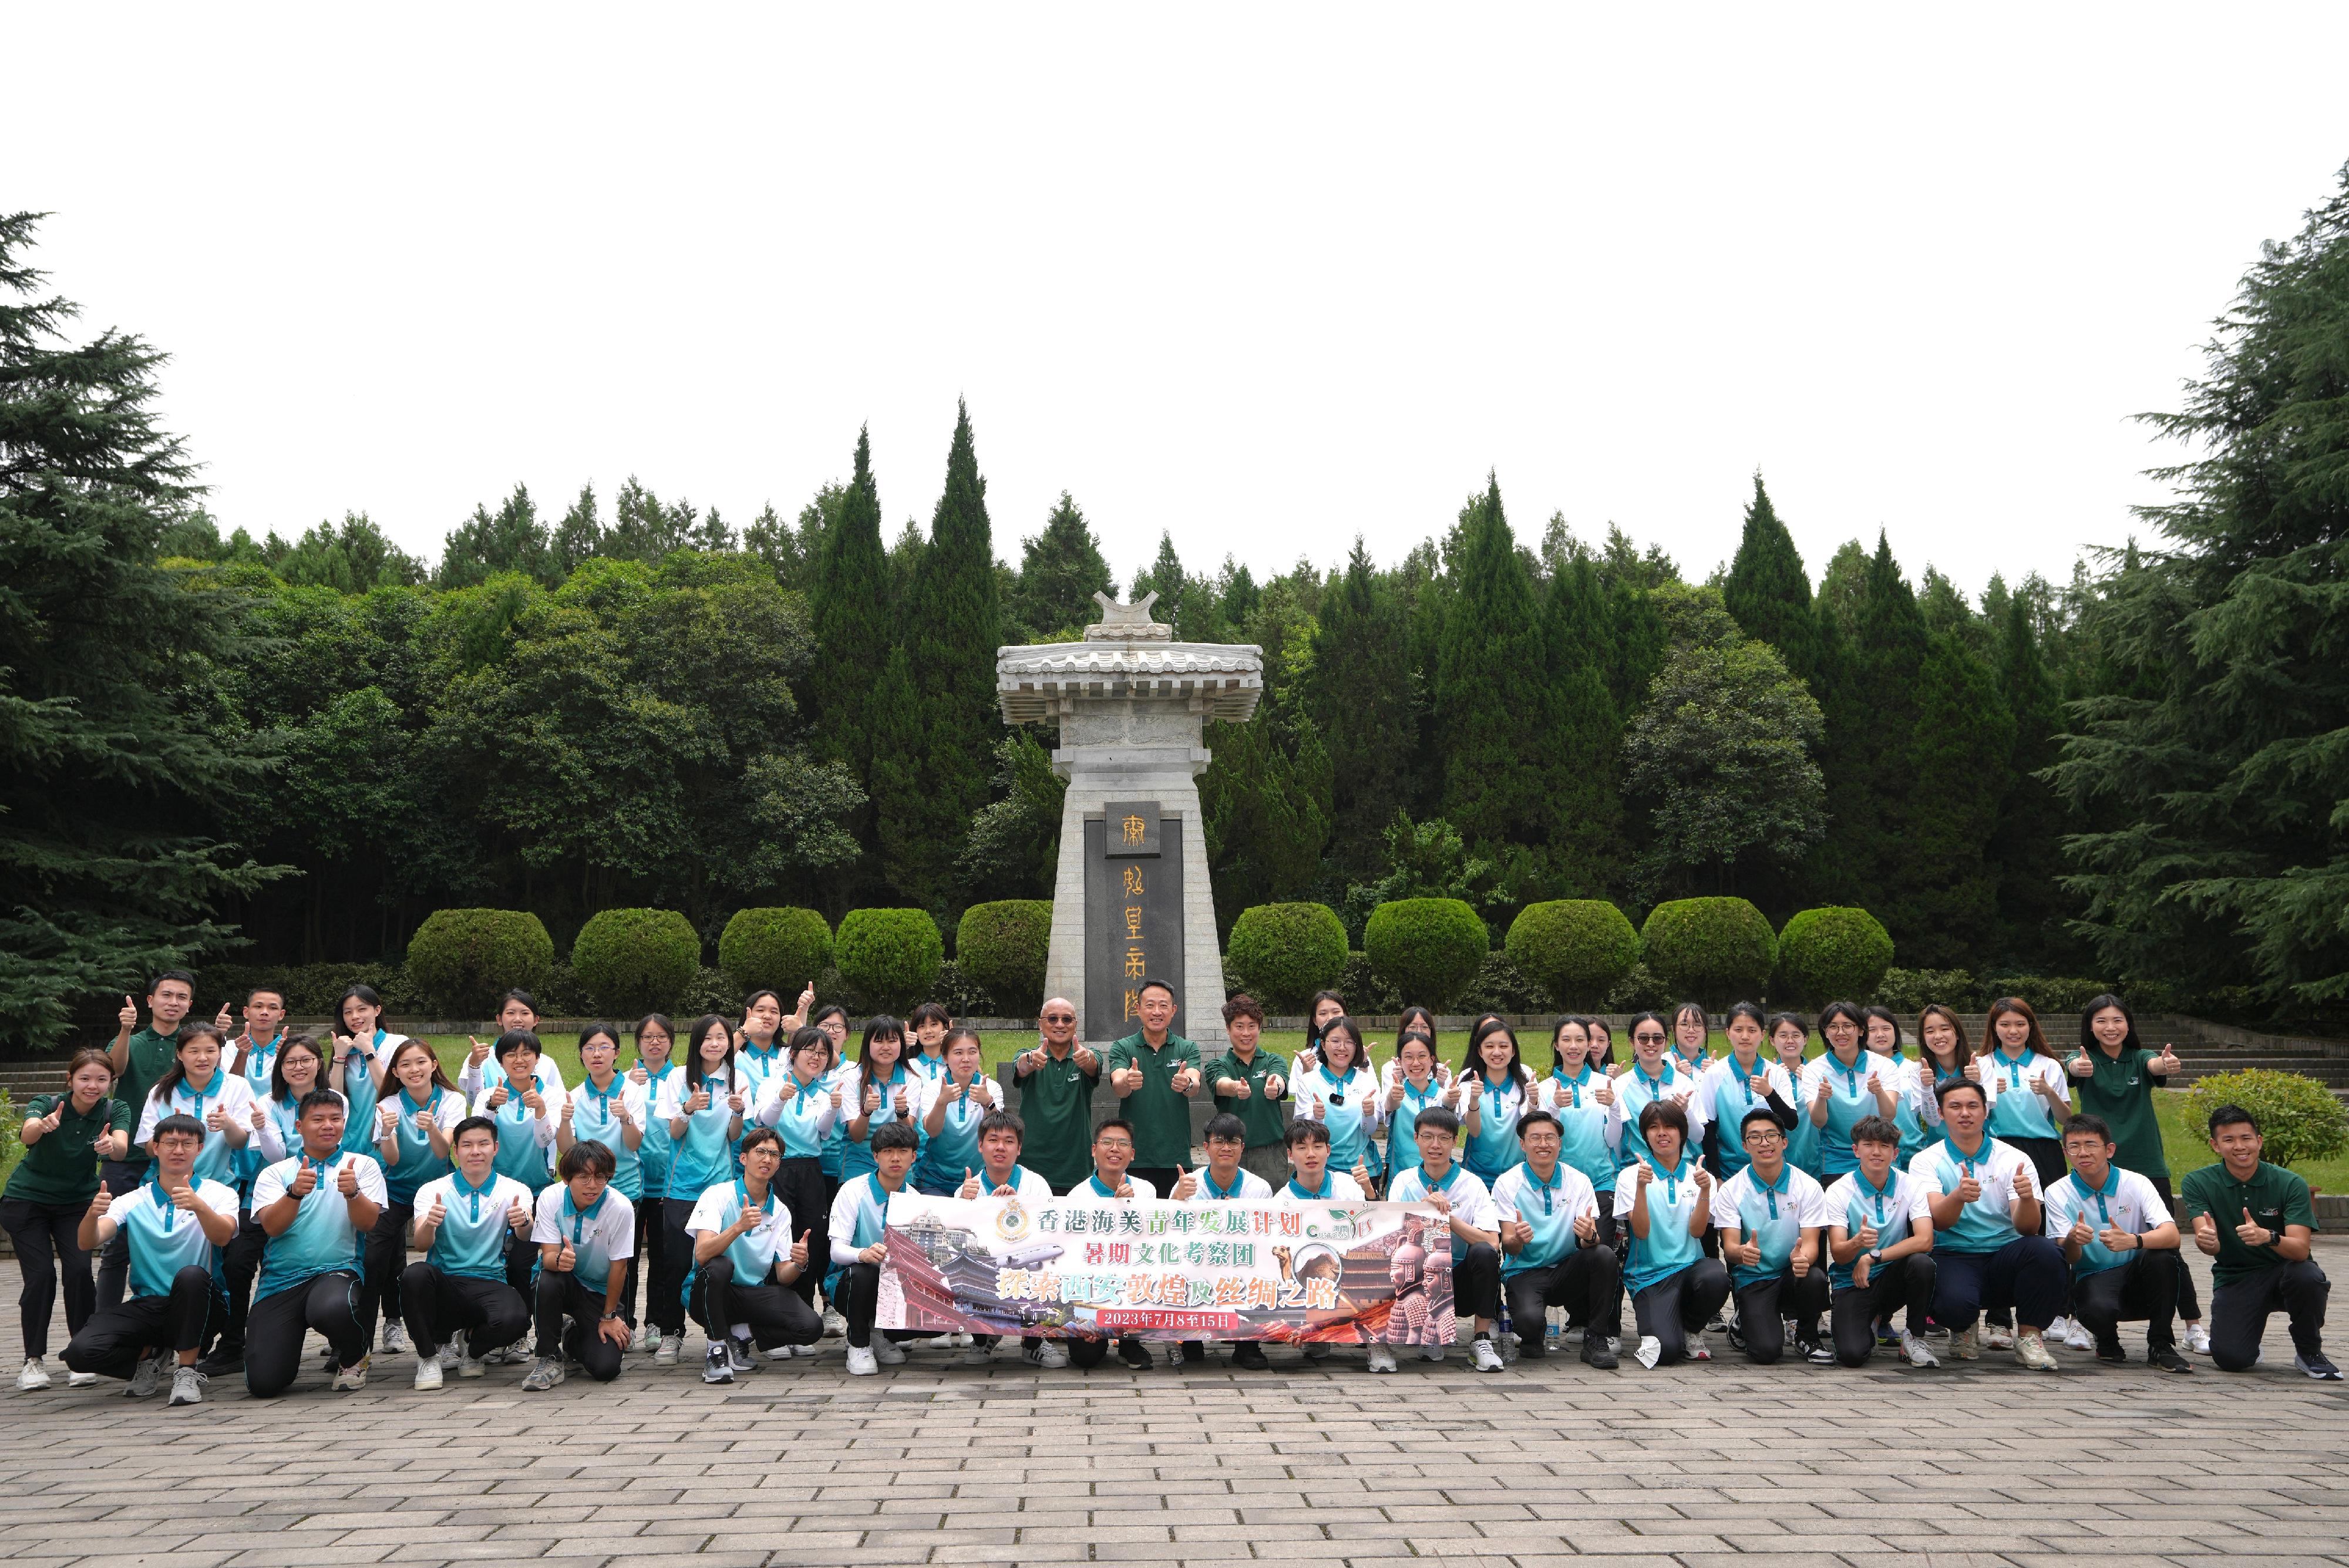 海关副关长（管制及执法）陈子达（第二排中）于七月十四日带领「Customs YES」团员参观秦始皇兵马俑博物馆。

